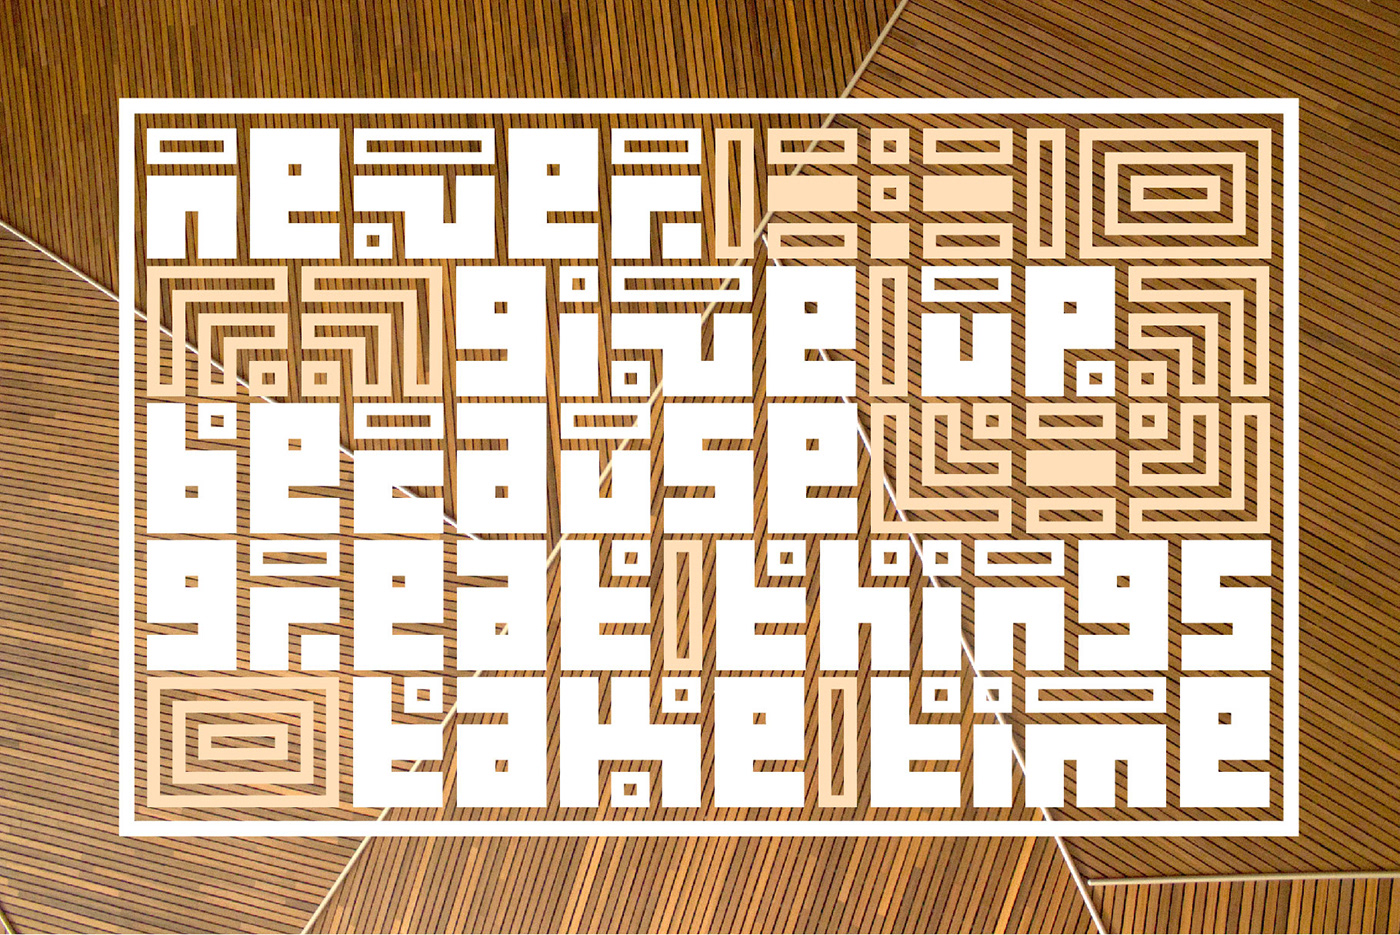 Arabic Kufic display font font design Grid font kufic latin Kufic square logo font square font type desisgn typeface design